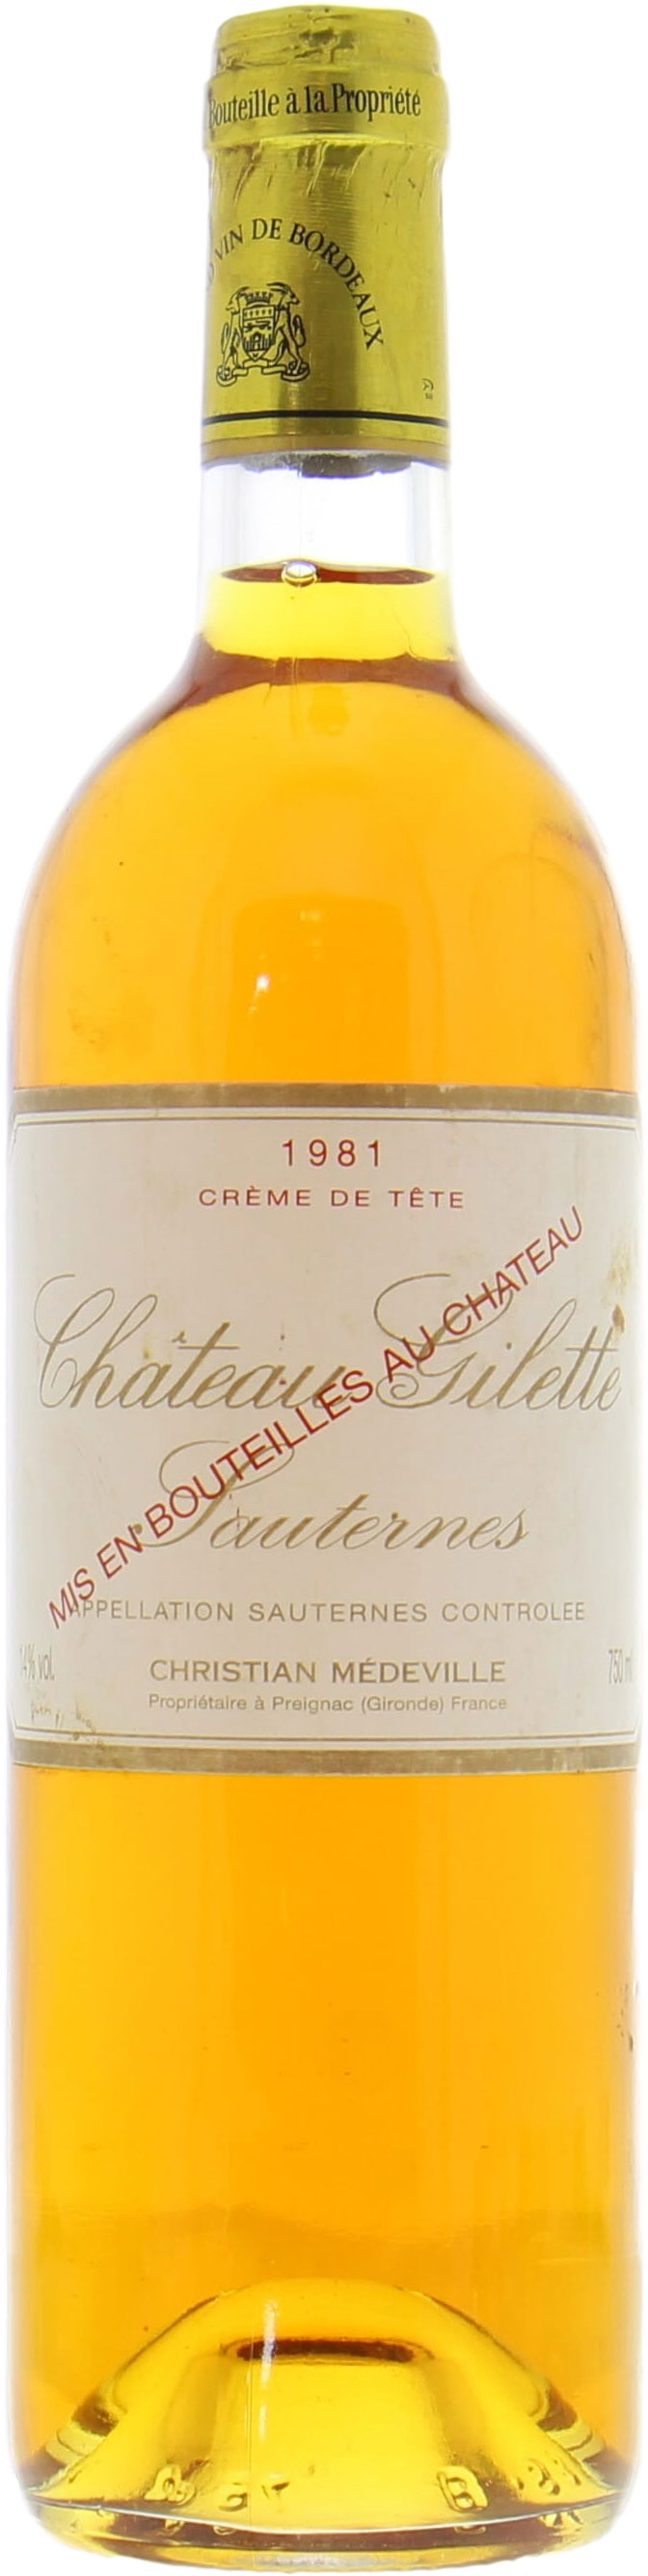 Chateau Gilette - Creme de Tete 1981 Perfect